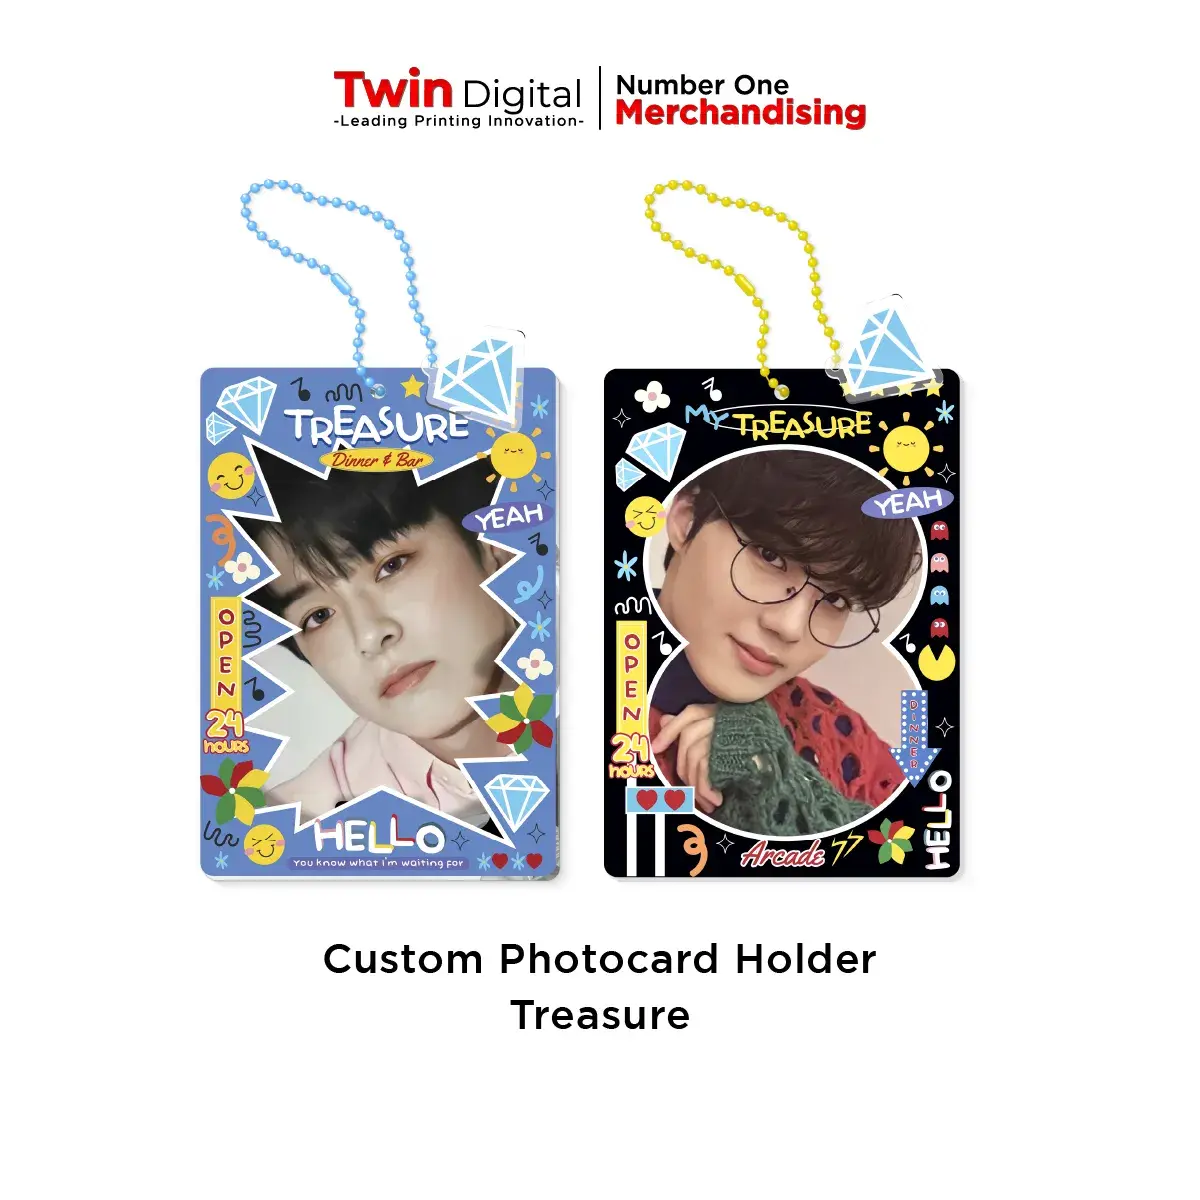 Custom Photocard Holder Akrilik Treasure - Twin Digital